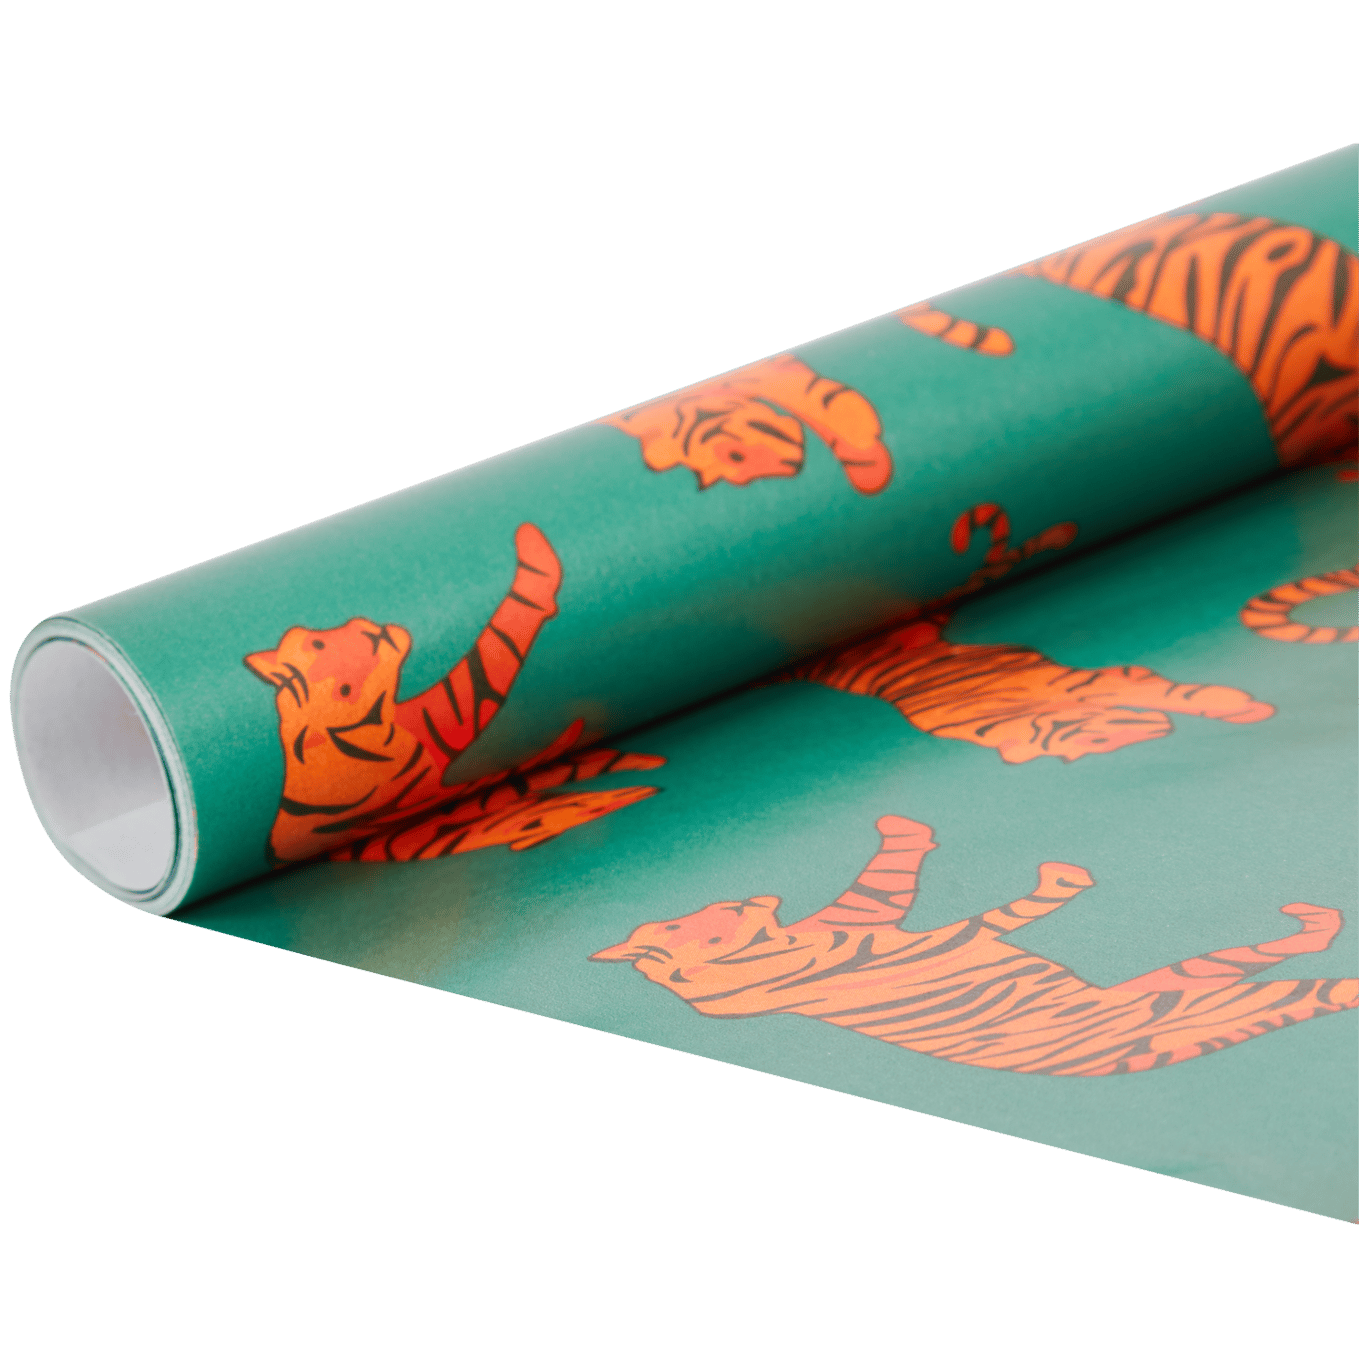 Wrap - Papier cadeau - Rouge brillant - 2 x 1 m - Habitat